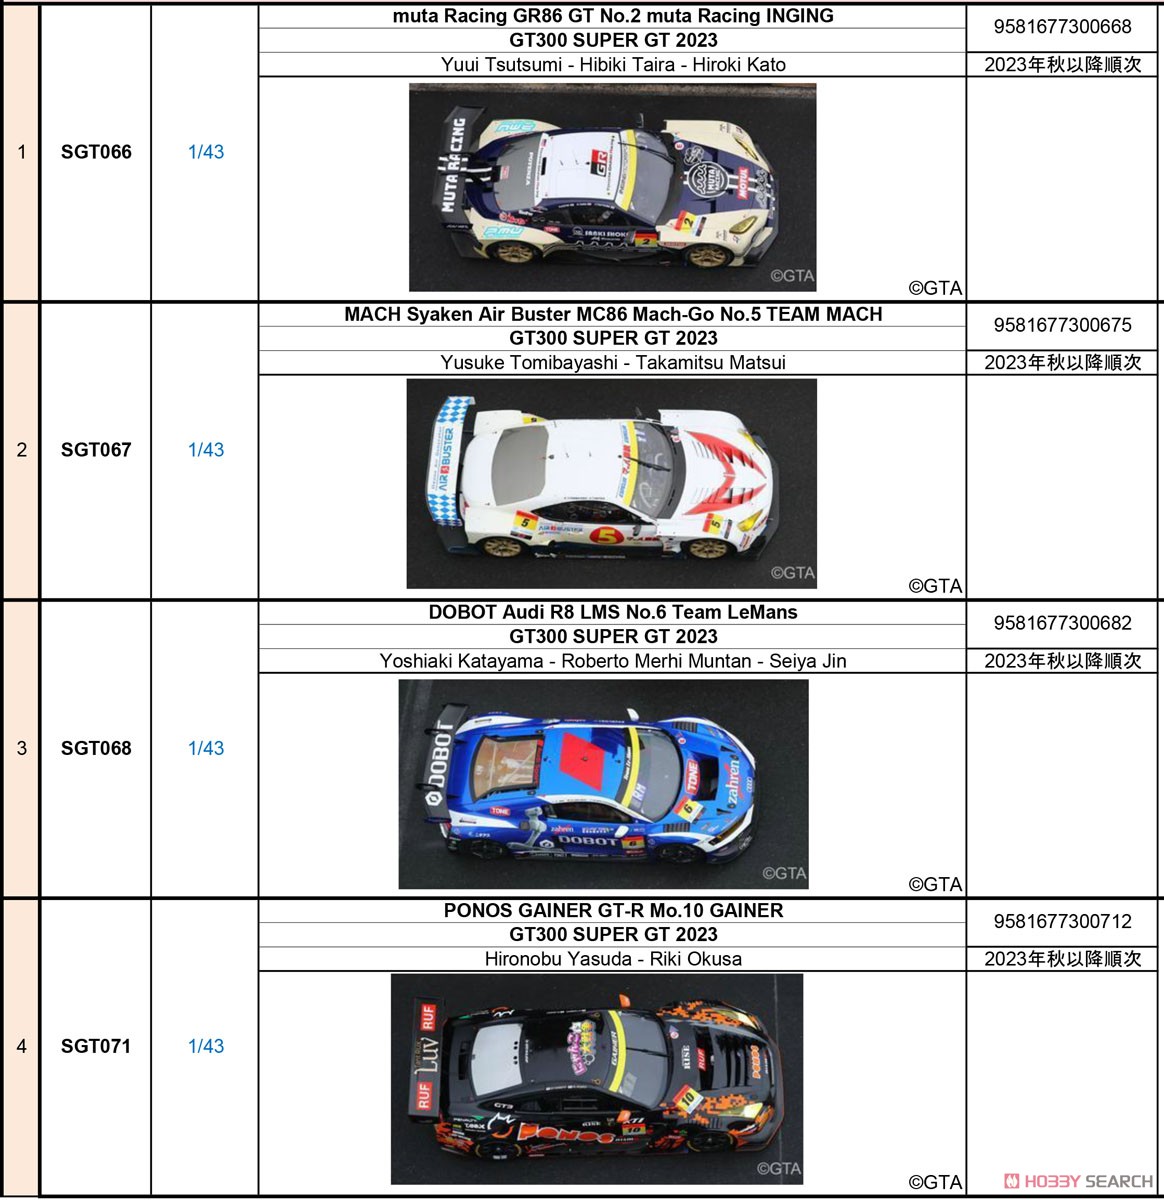 muta Racing GR86 GT No.2 INGING GT300 SUPER GT 2023 - Yuui Tsutsumi Hibiki Taira Hiroki Kato (ミニカー) その他の画像2